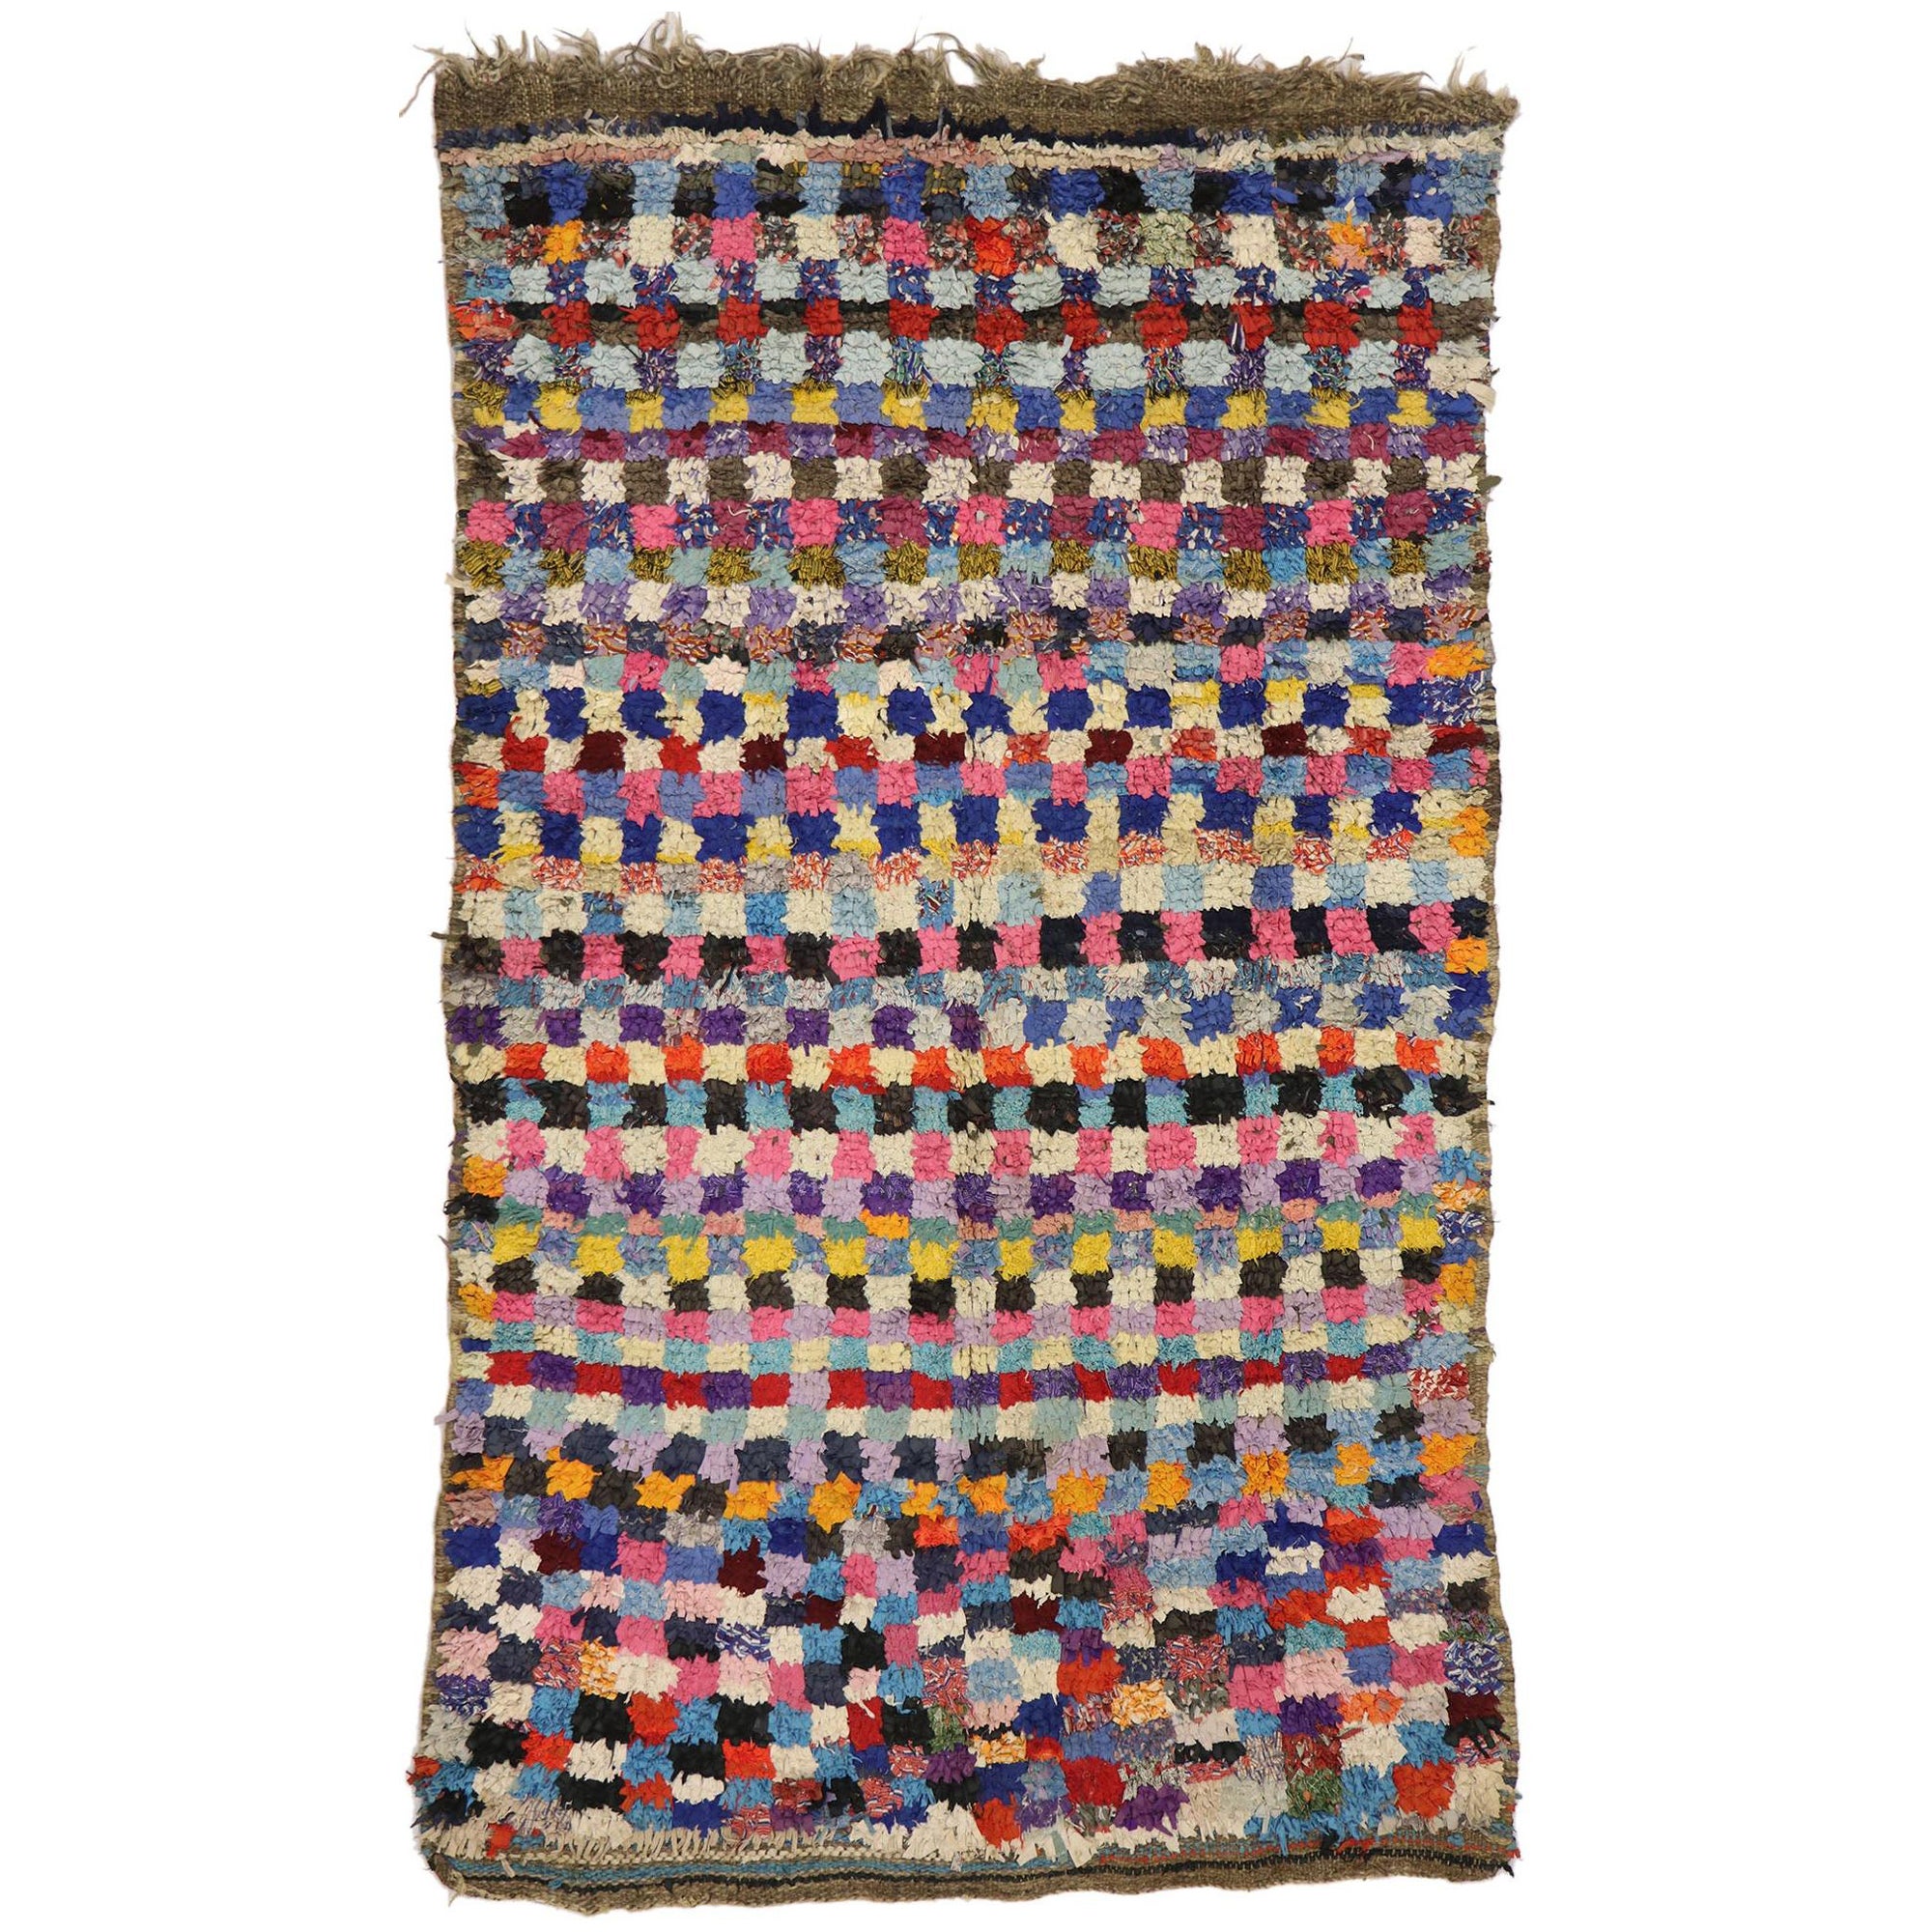 Berber Moroccan handwoven vintage boucherouite Rug Contemporary rugs Boucherouite Moroccan handmade Rug Authentic rug